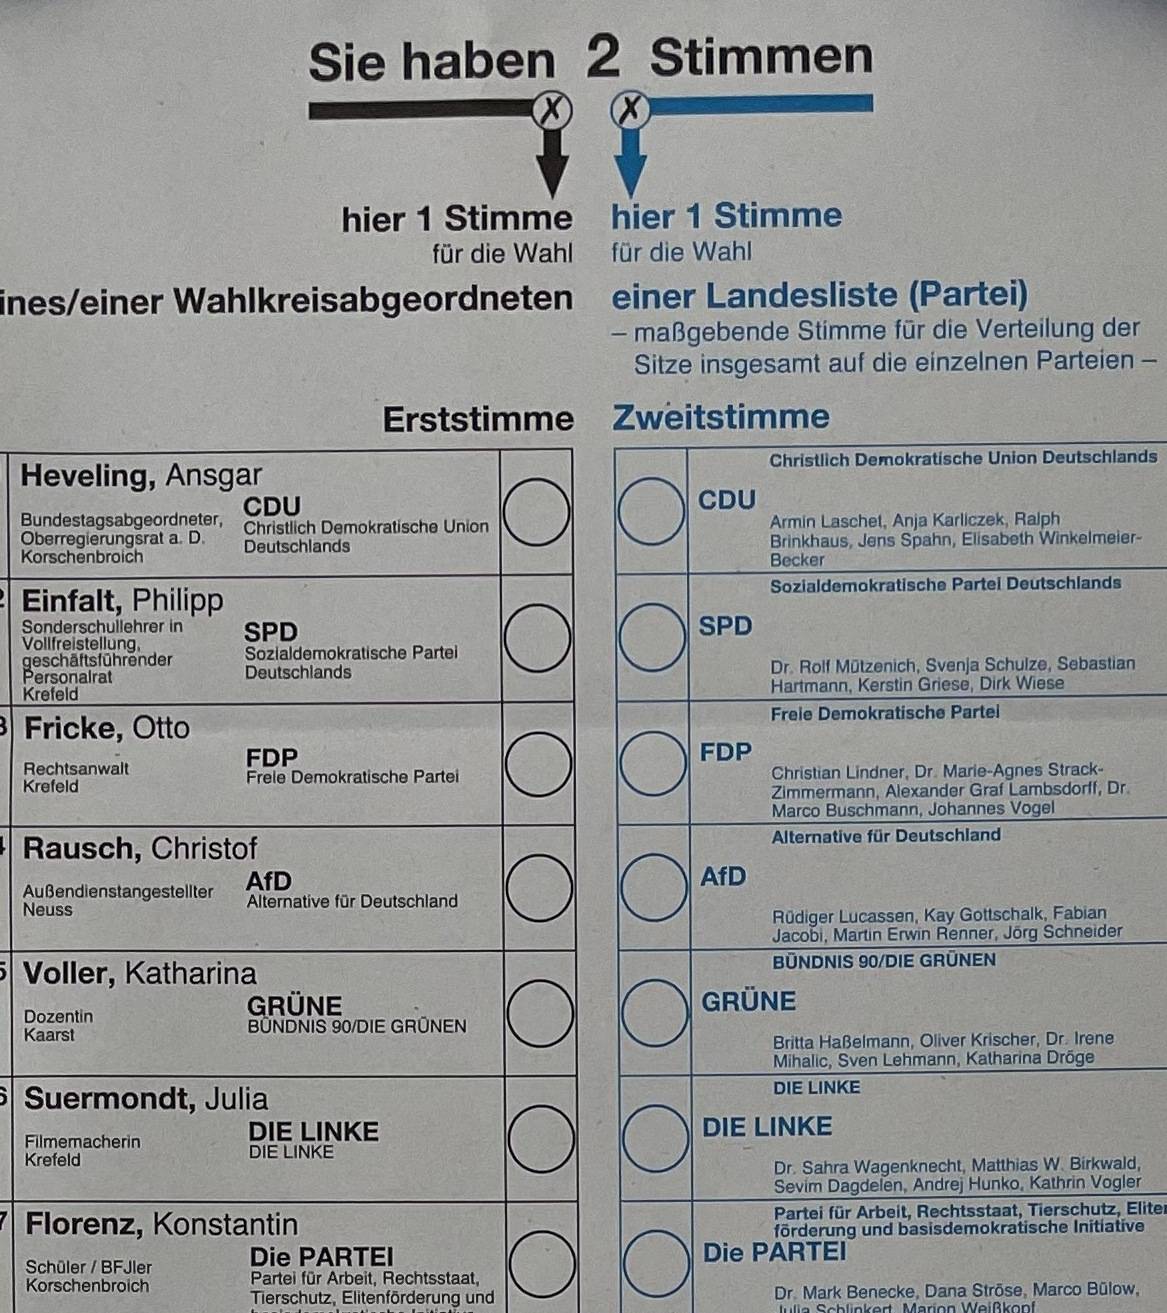  Ein Auszug des Stimmzettels.  